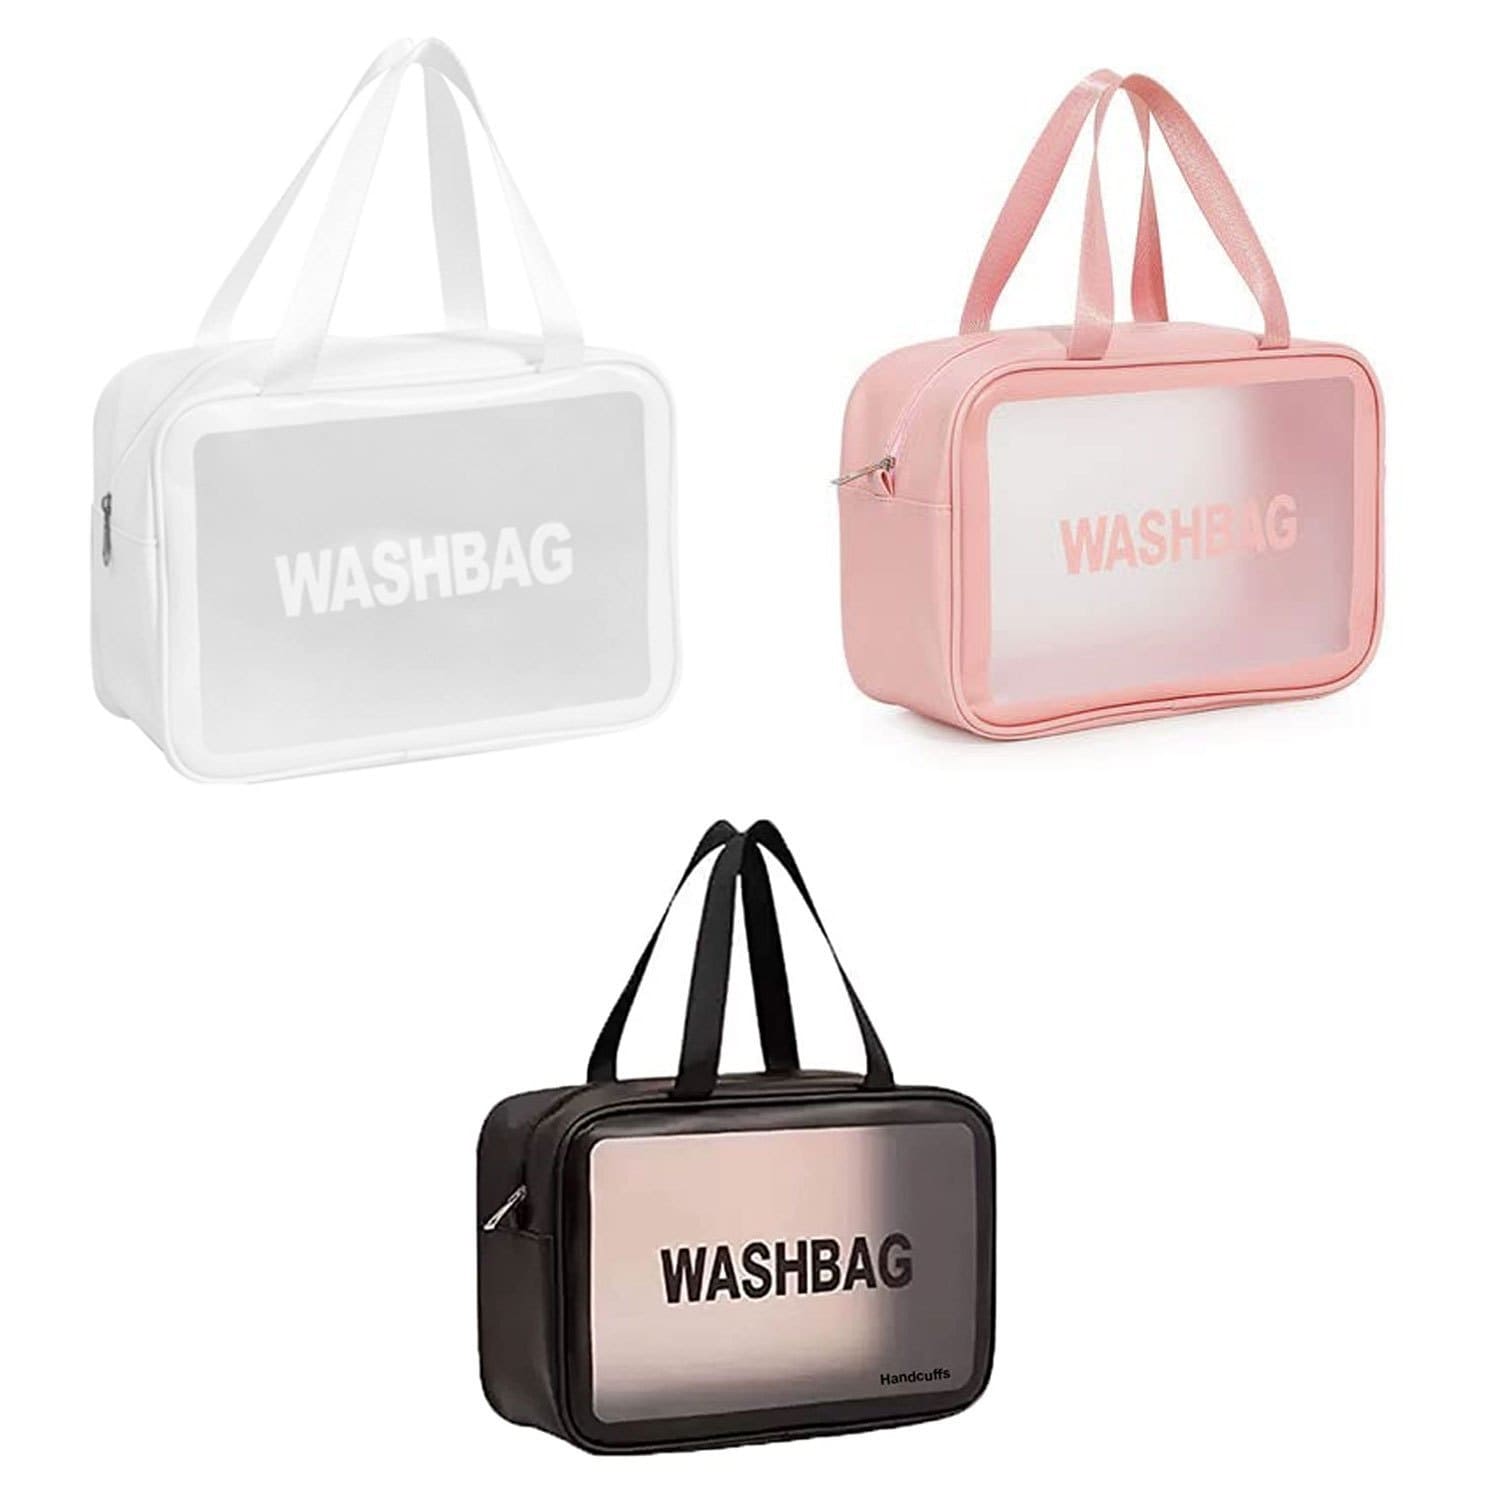 کیف لوازم آرایش زنانه مدل WASHBAG بزرگ سایز شماره ۳ رنگ صورتی